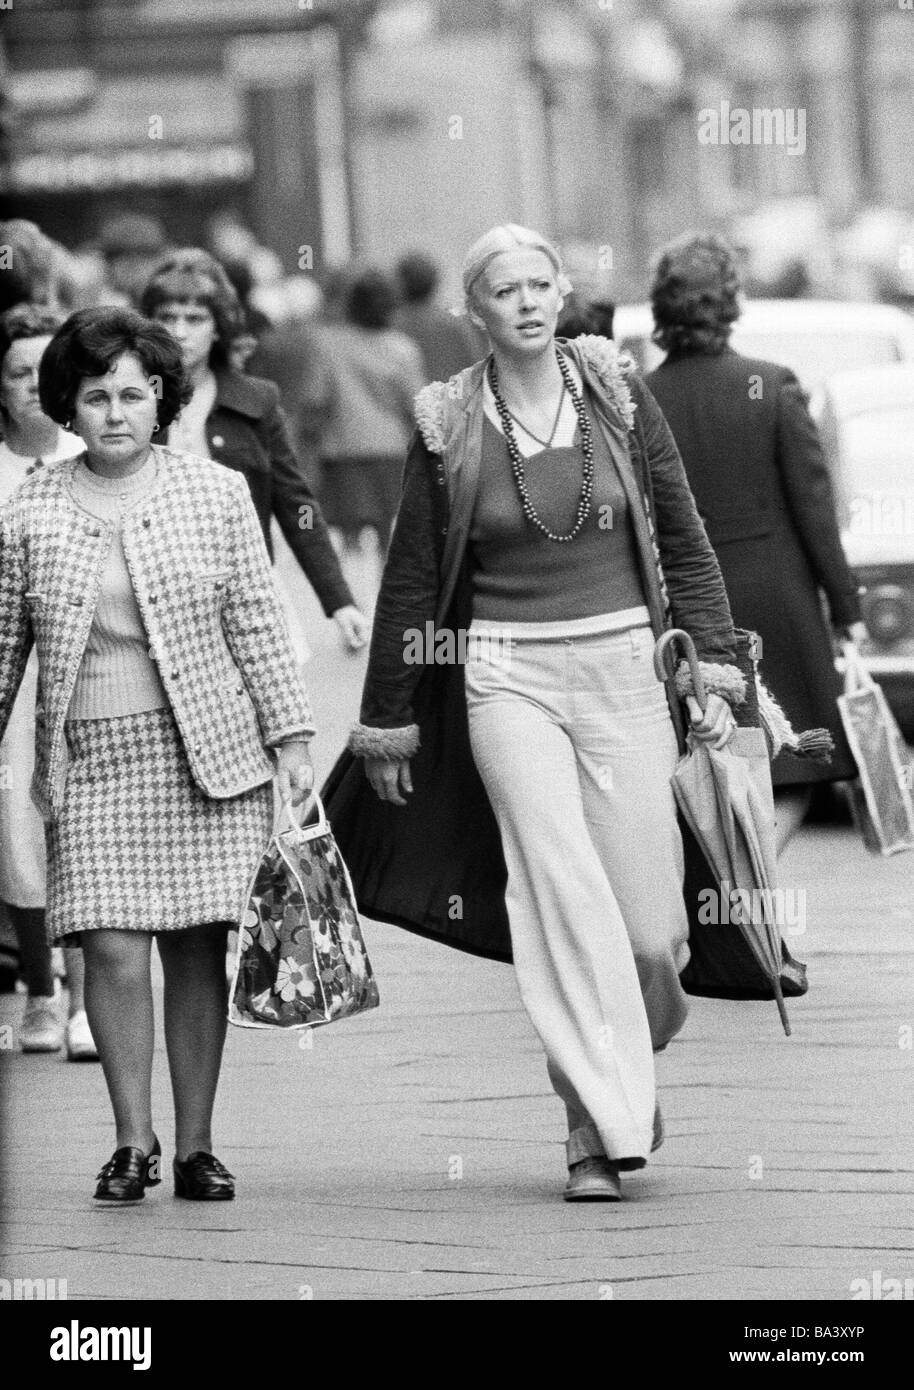 70er Jahre Schwarz Weiss Foto Menschen Junge Frau Im Alter Von 30 Bis 40 Jahren Frau Im Alter Von 40 Bis 50 Jahren Pulli Jacke Hose Frauen Anzug Spazieren Sie Entlang